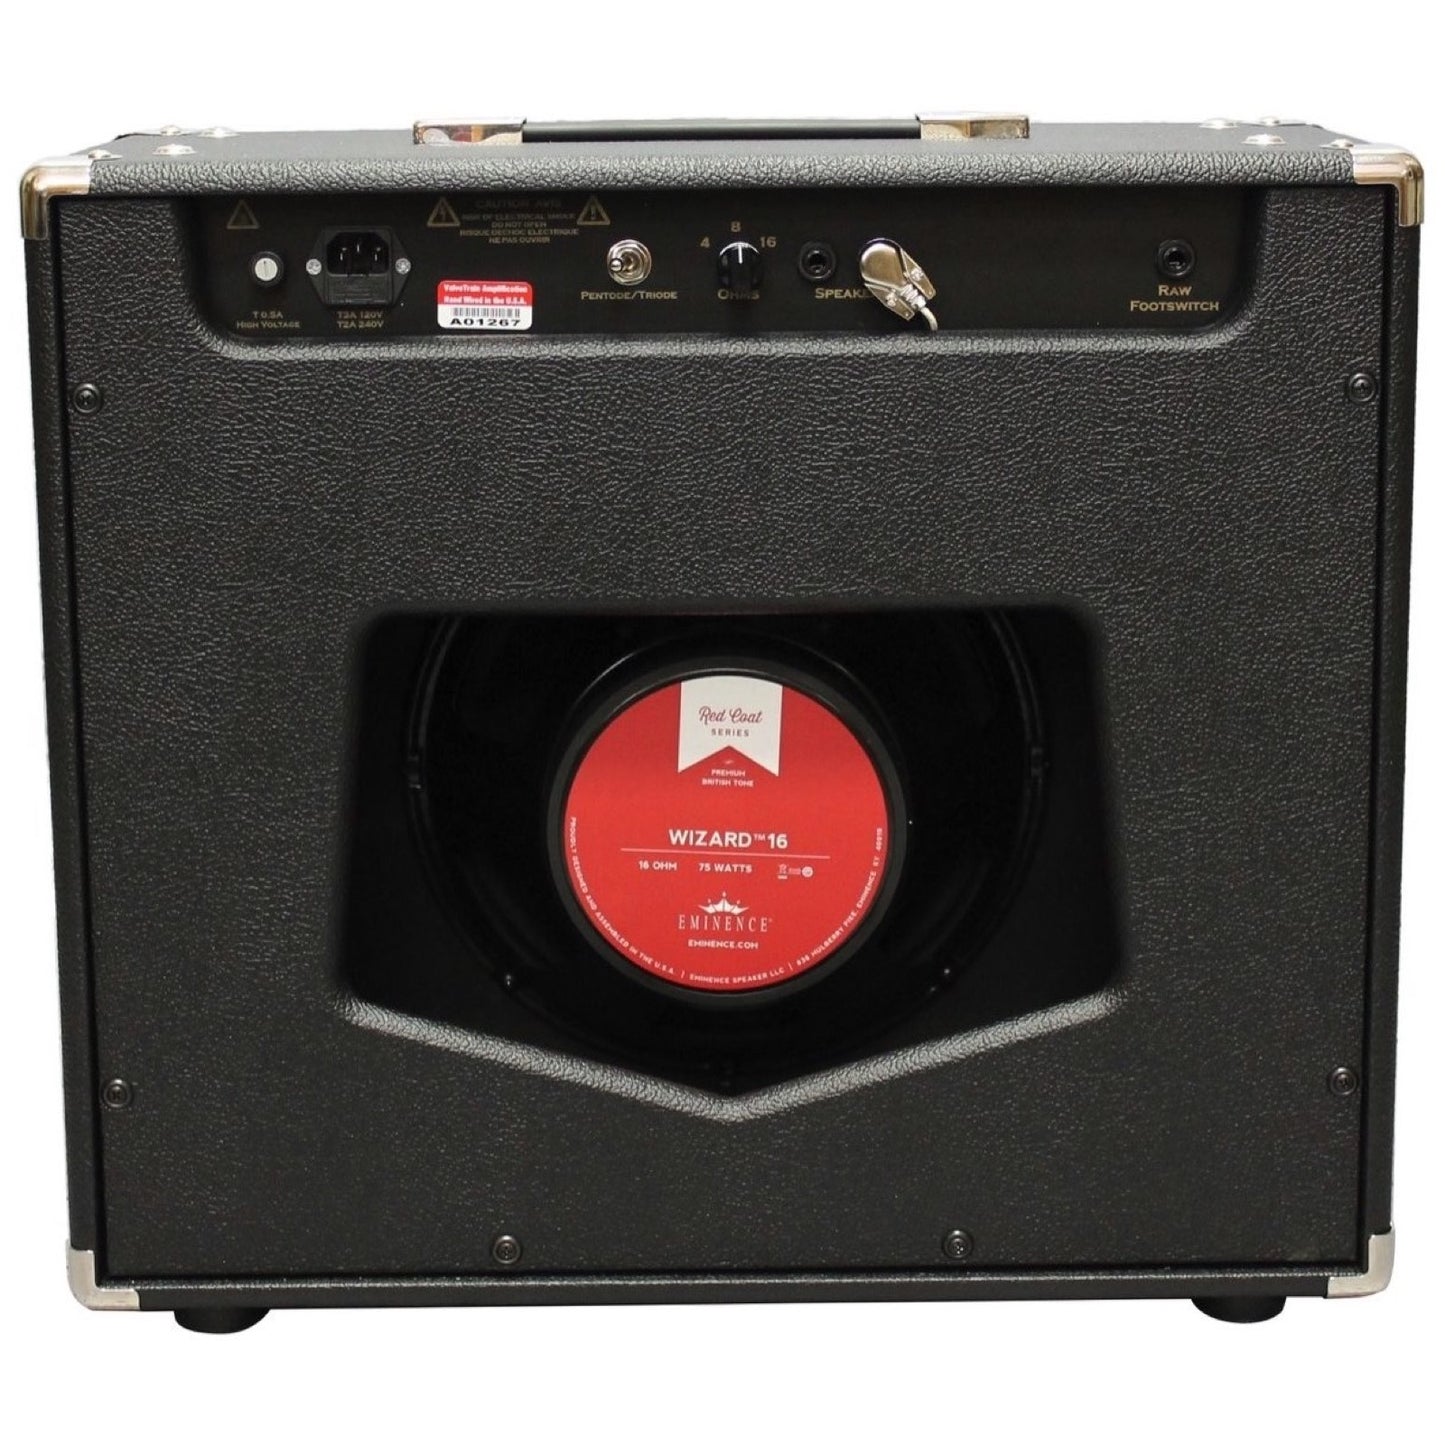 ValveTrain Bennington Pro 112C Guitar Combo Amplifier (45 Watts, 1x12 Inch)